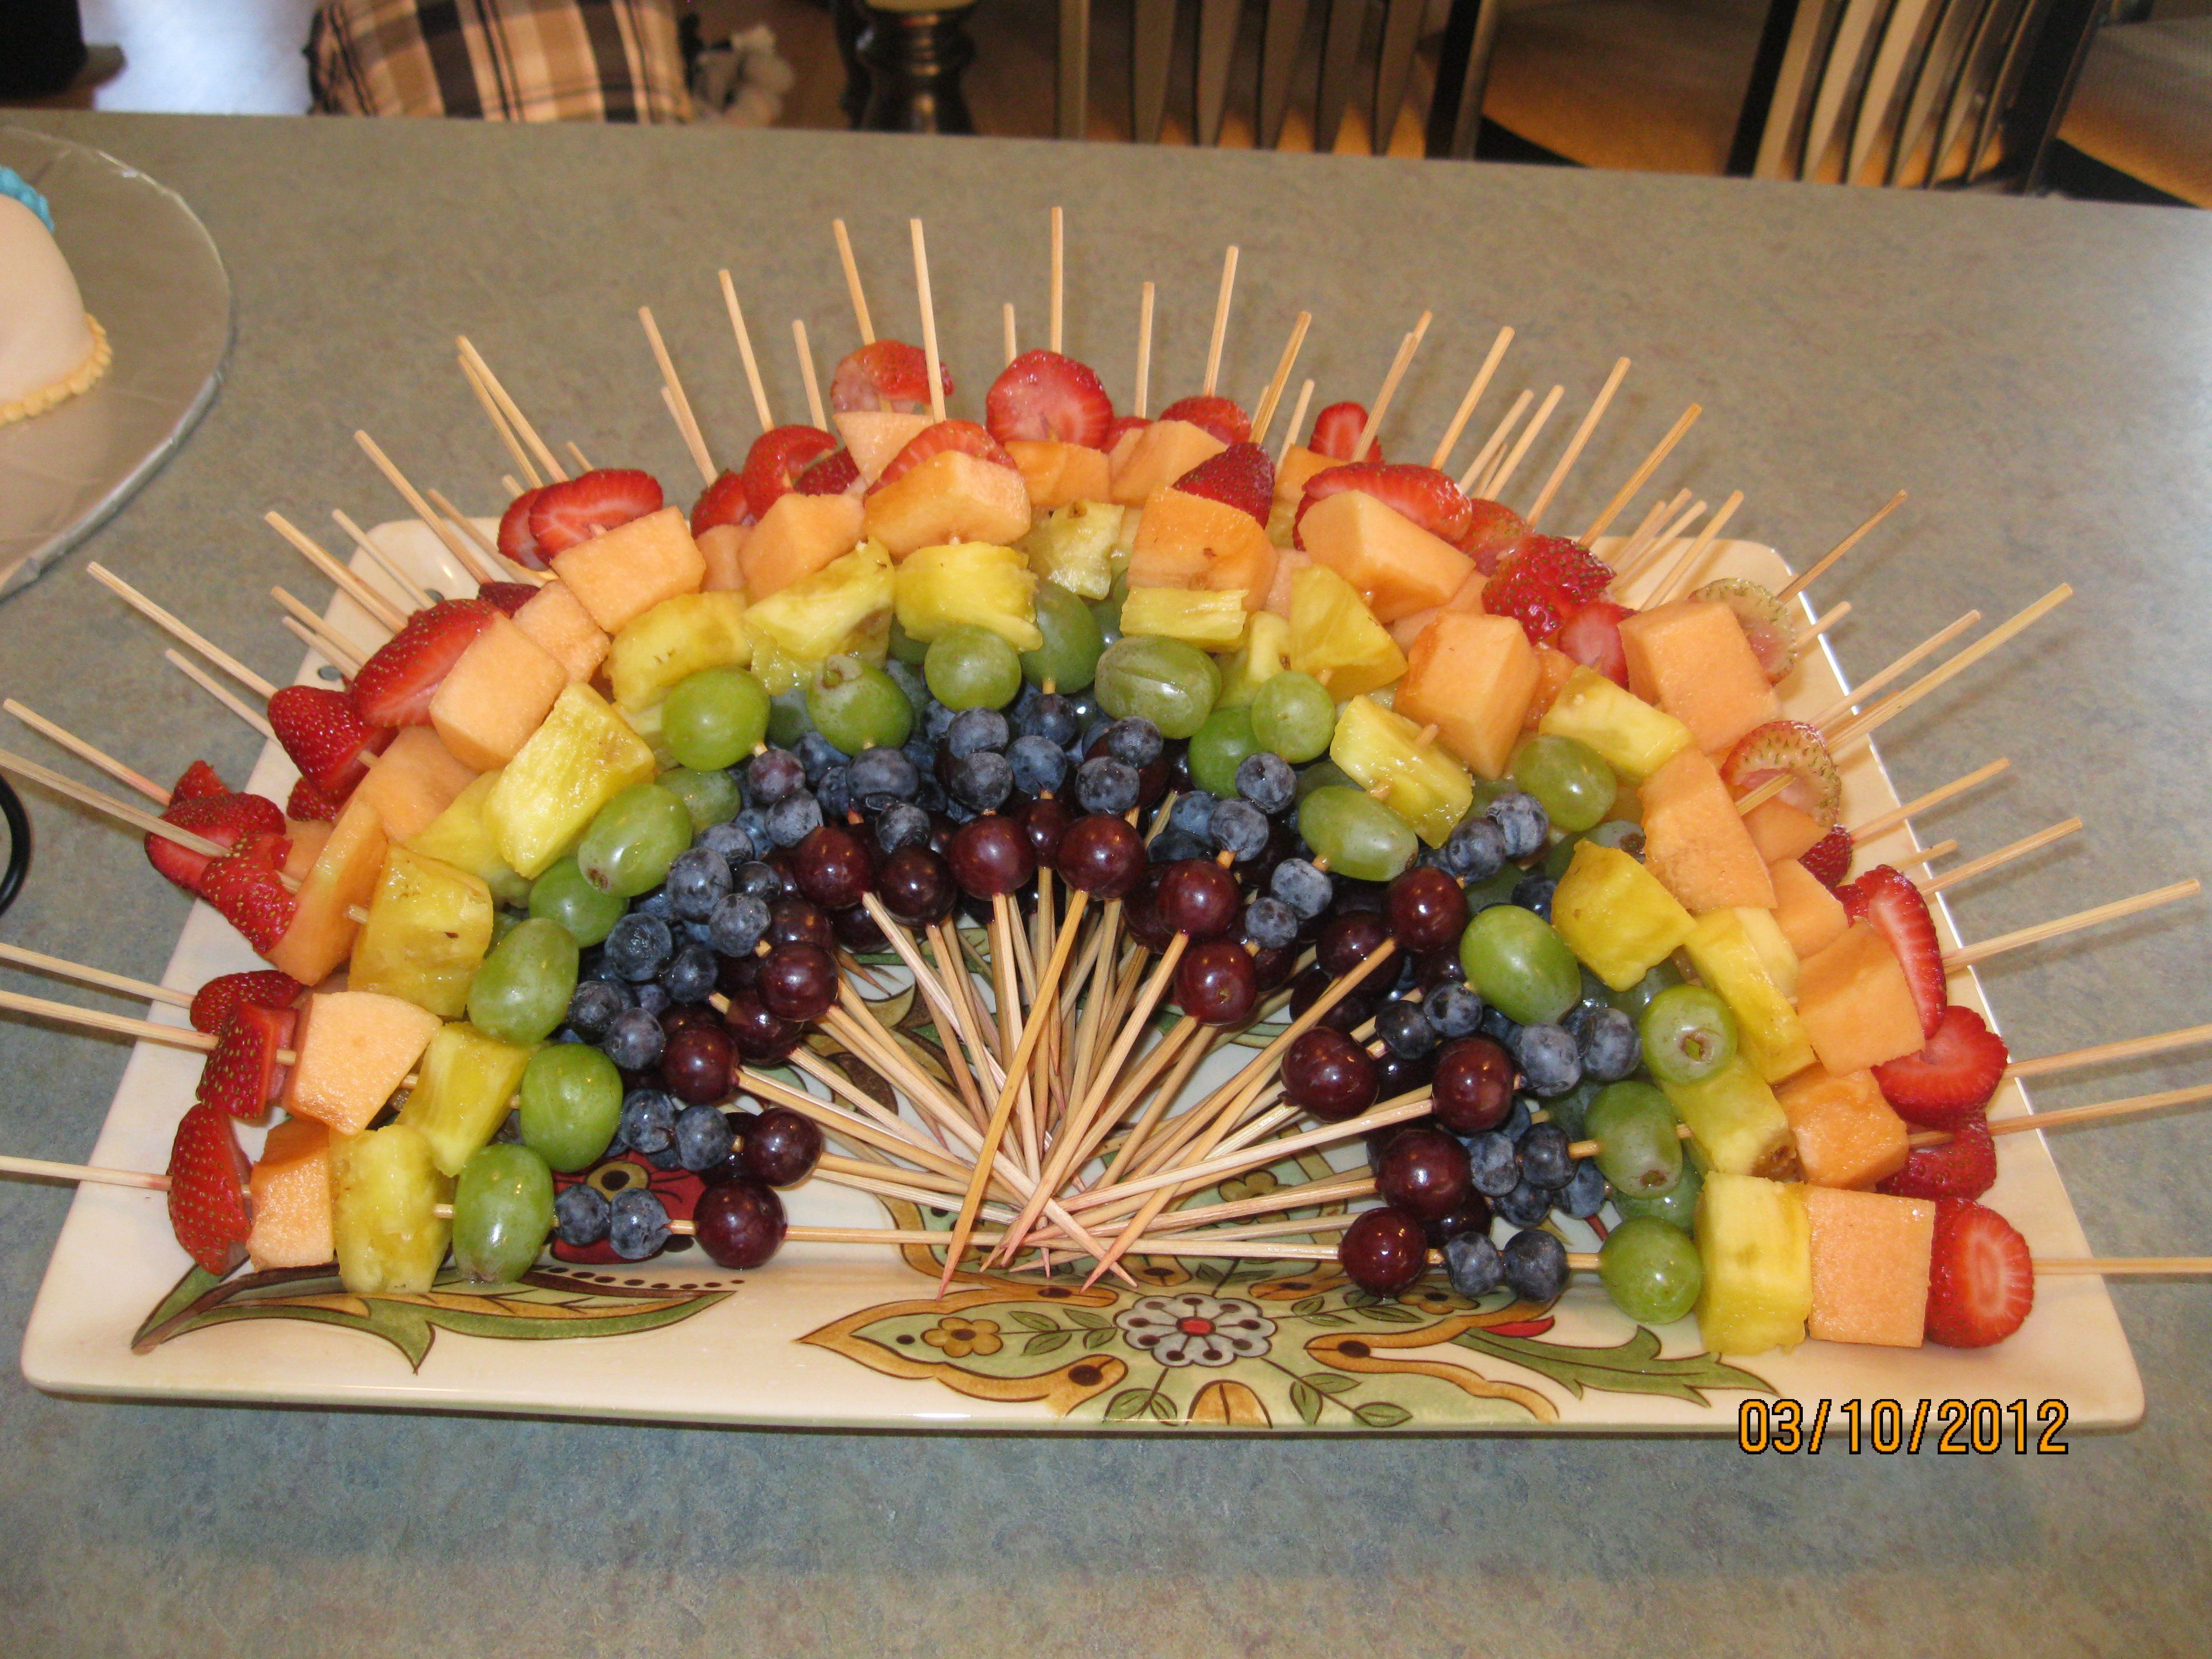 Шпажки фруктовые для детей на день рождения